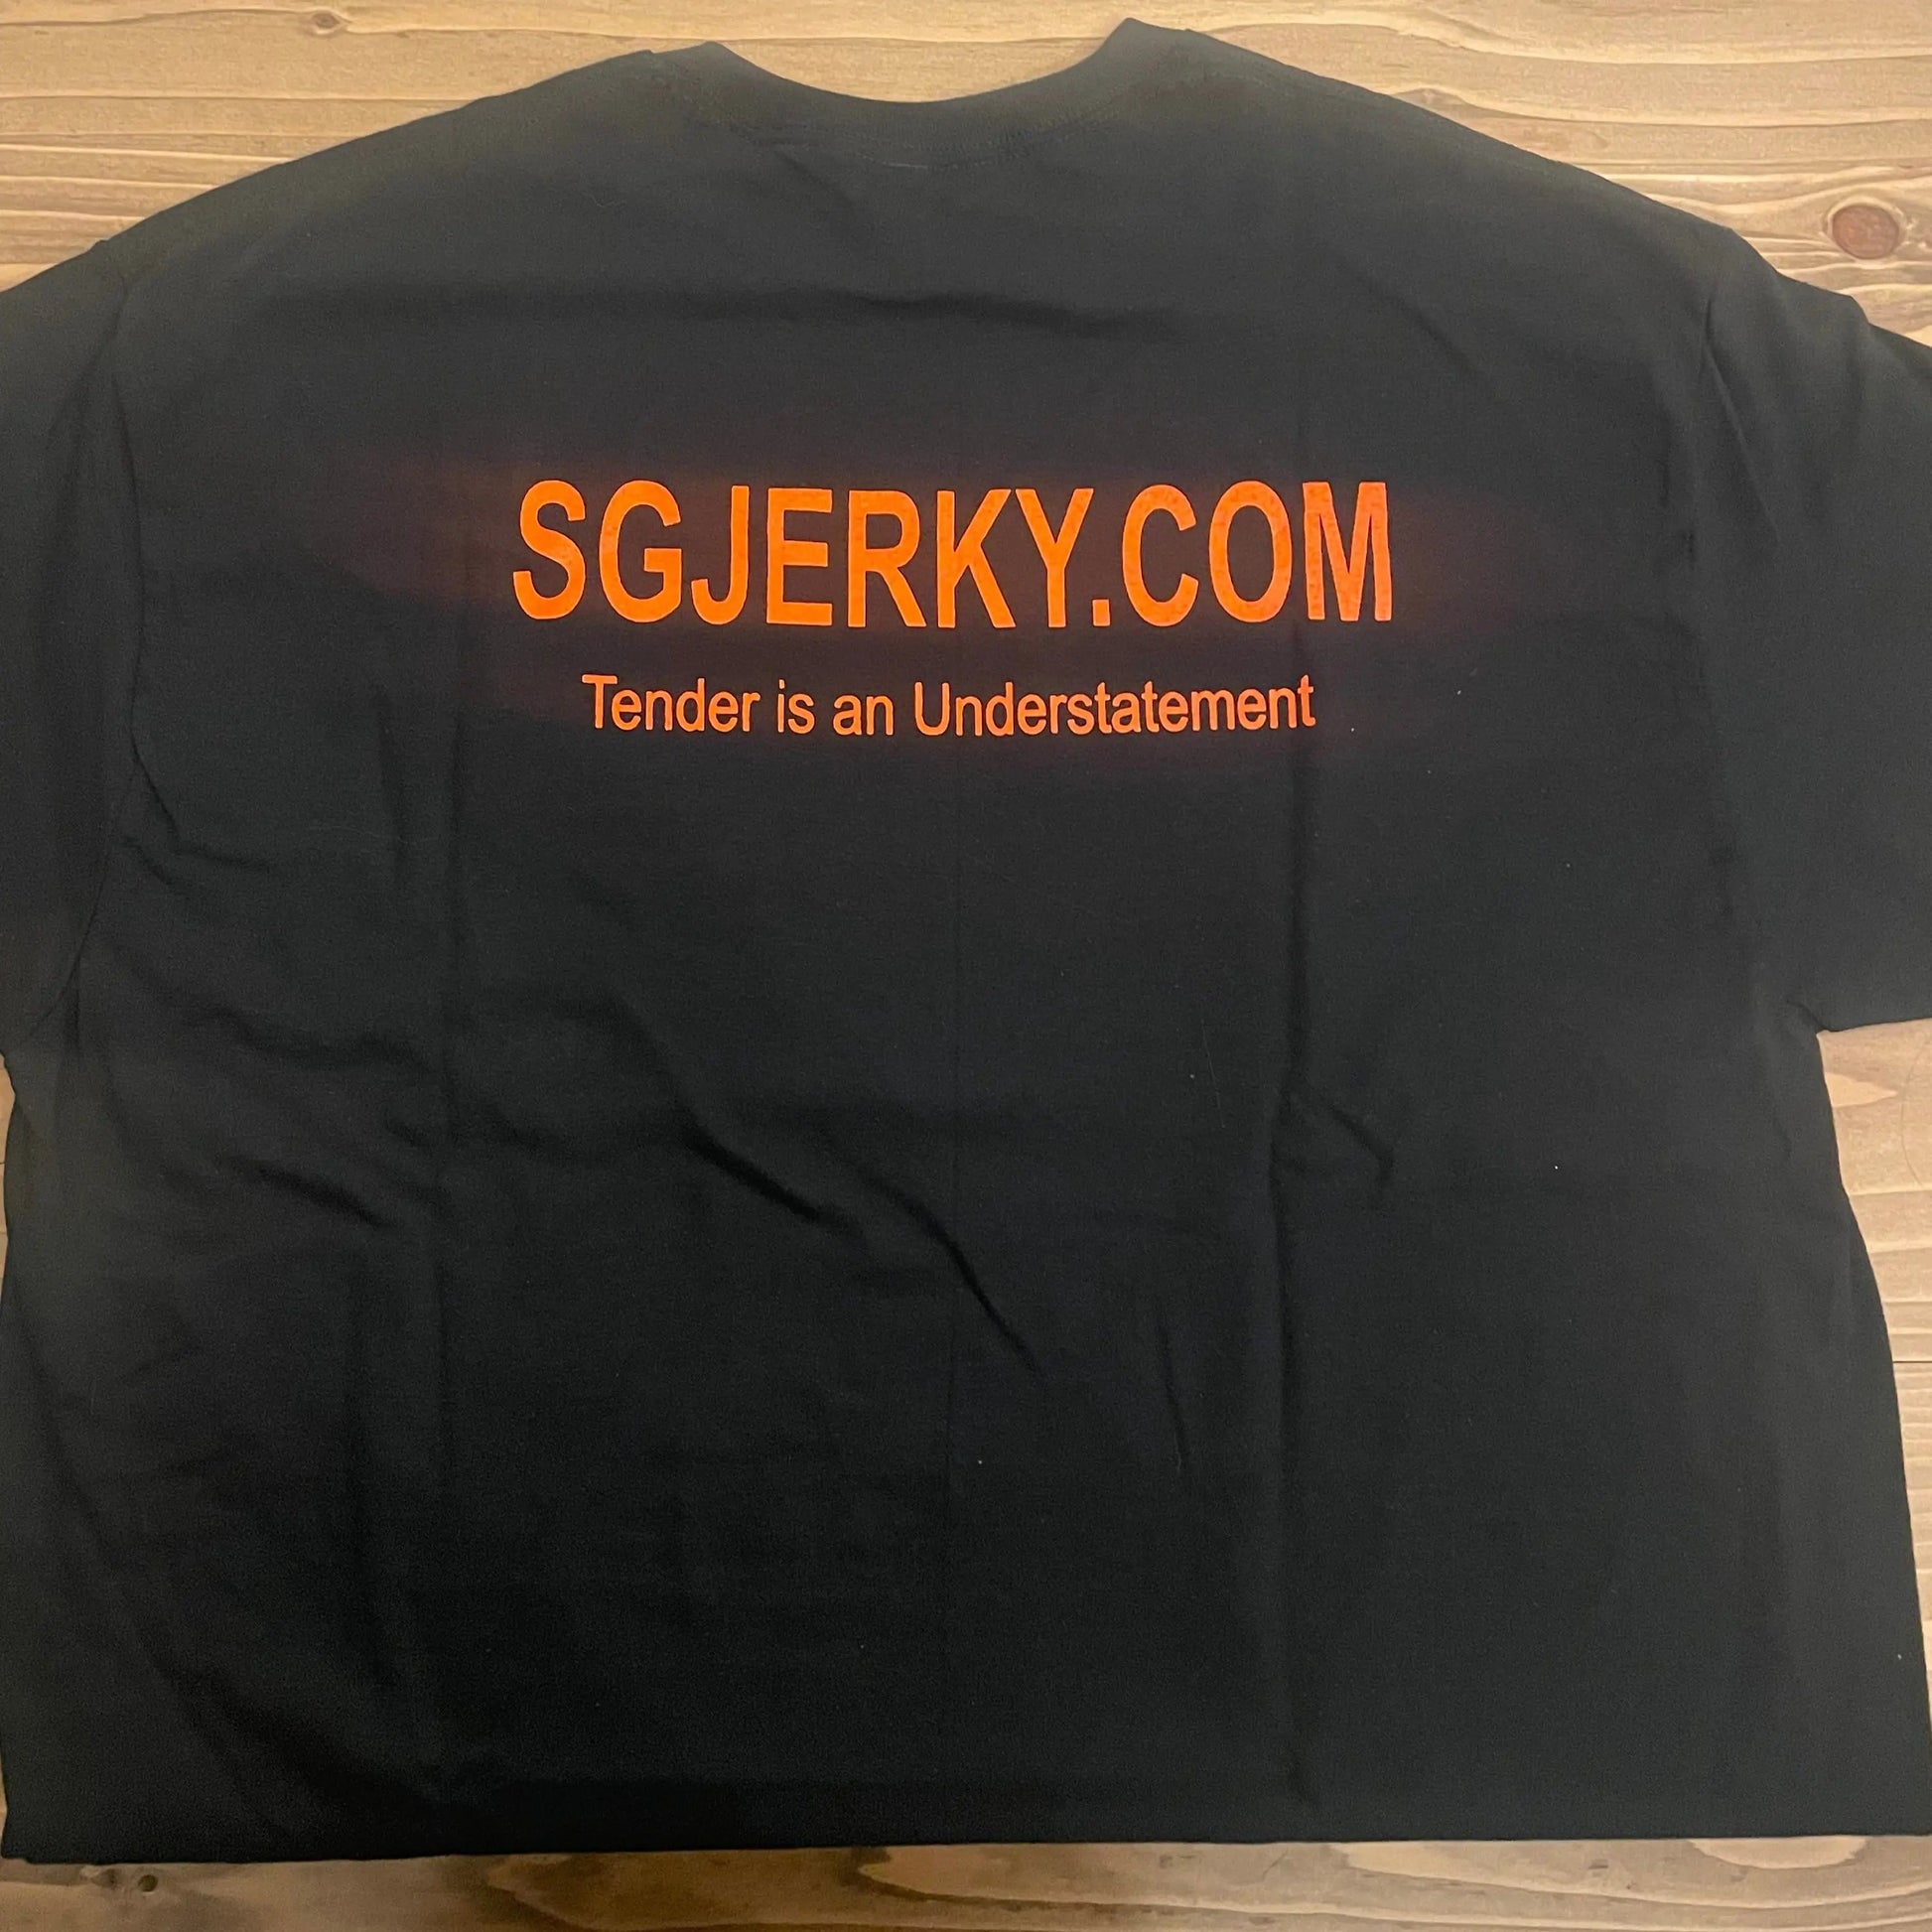 Stevie G Jerky T-Shirt featuring an orange logo